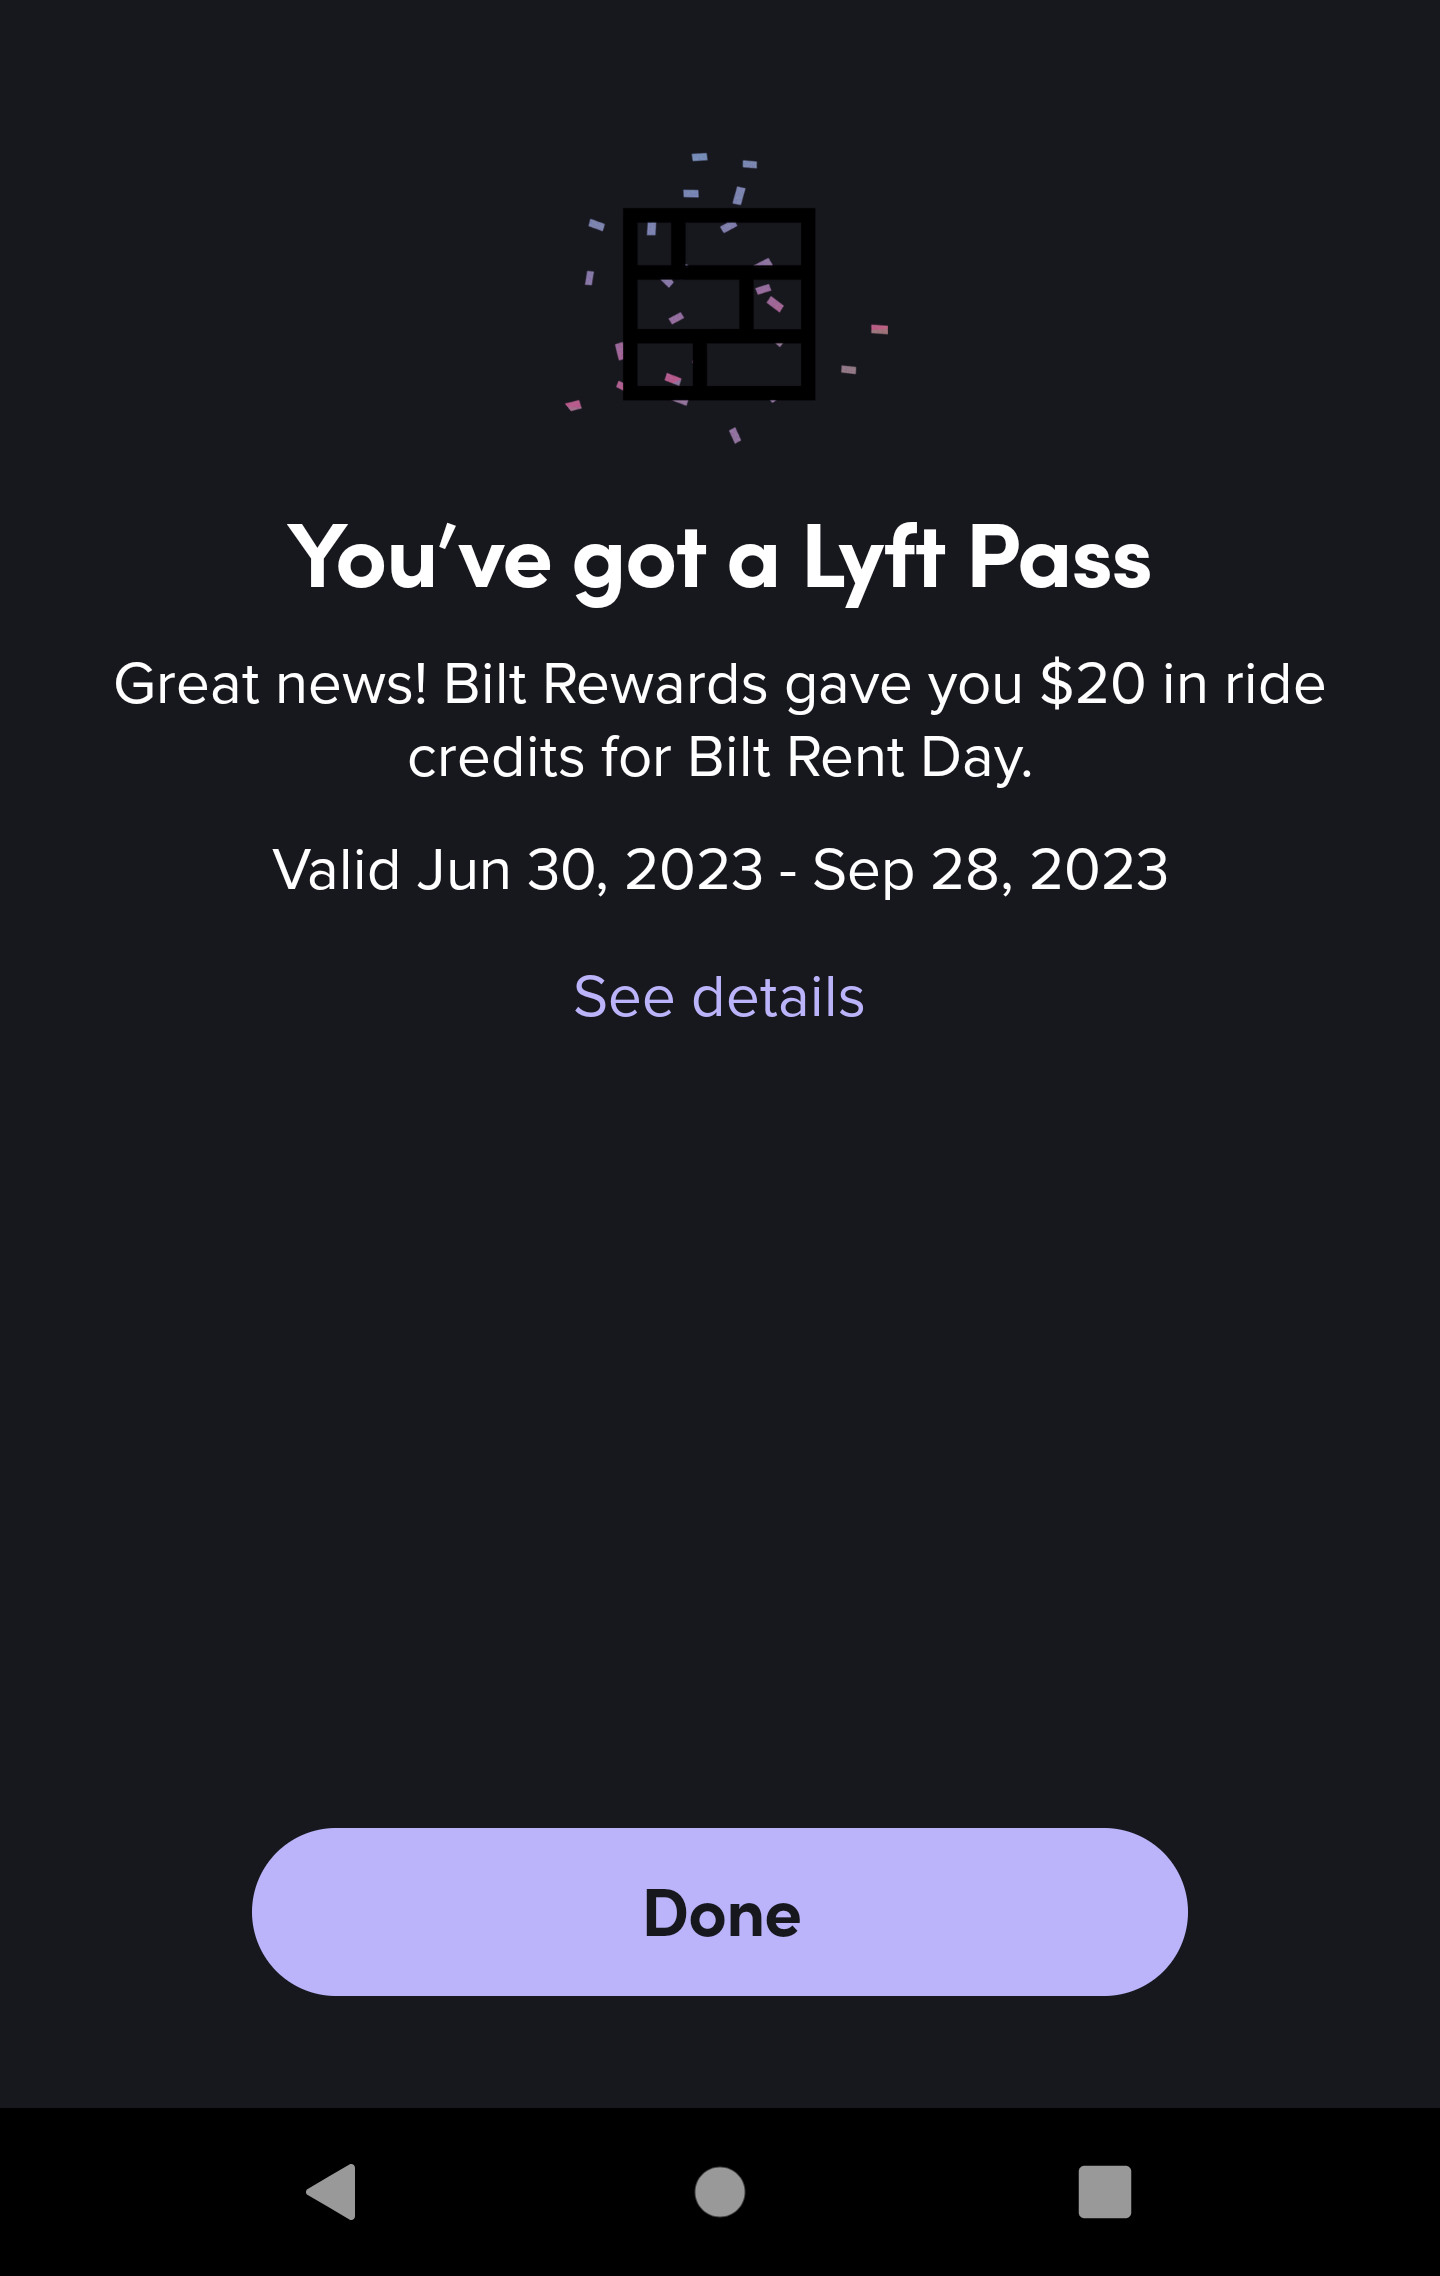 Screenshot from the Bilt app showing a Lyft Pass earned